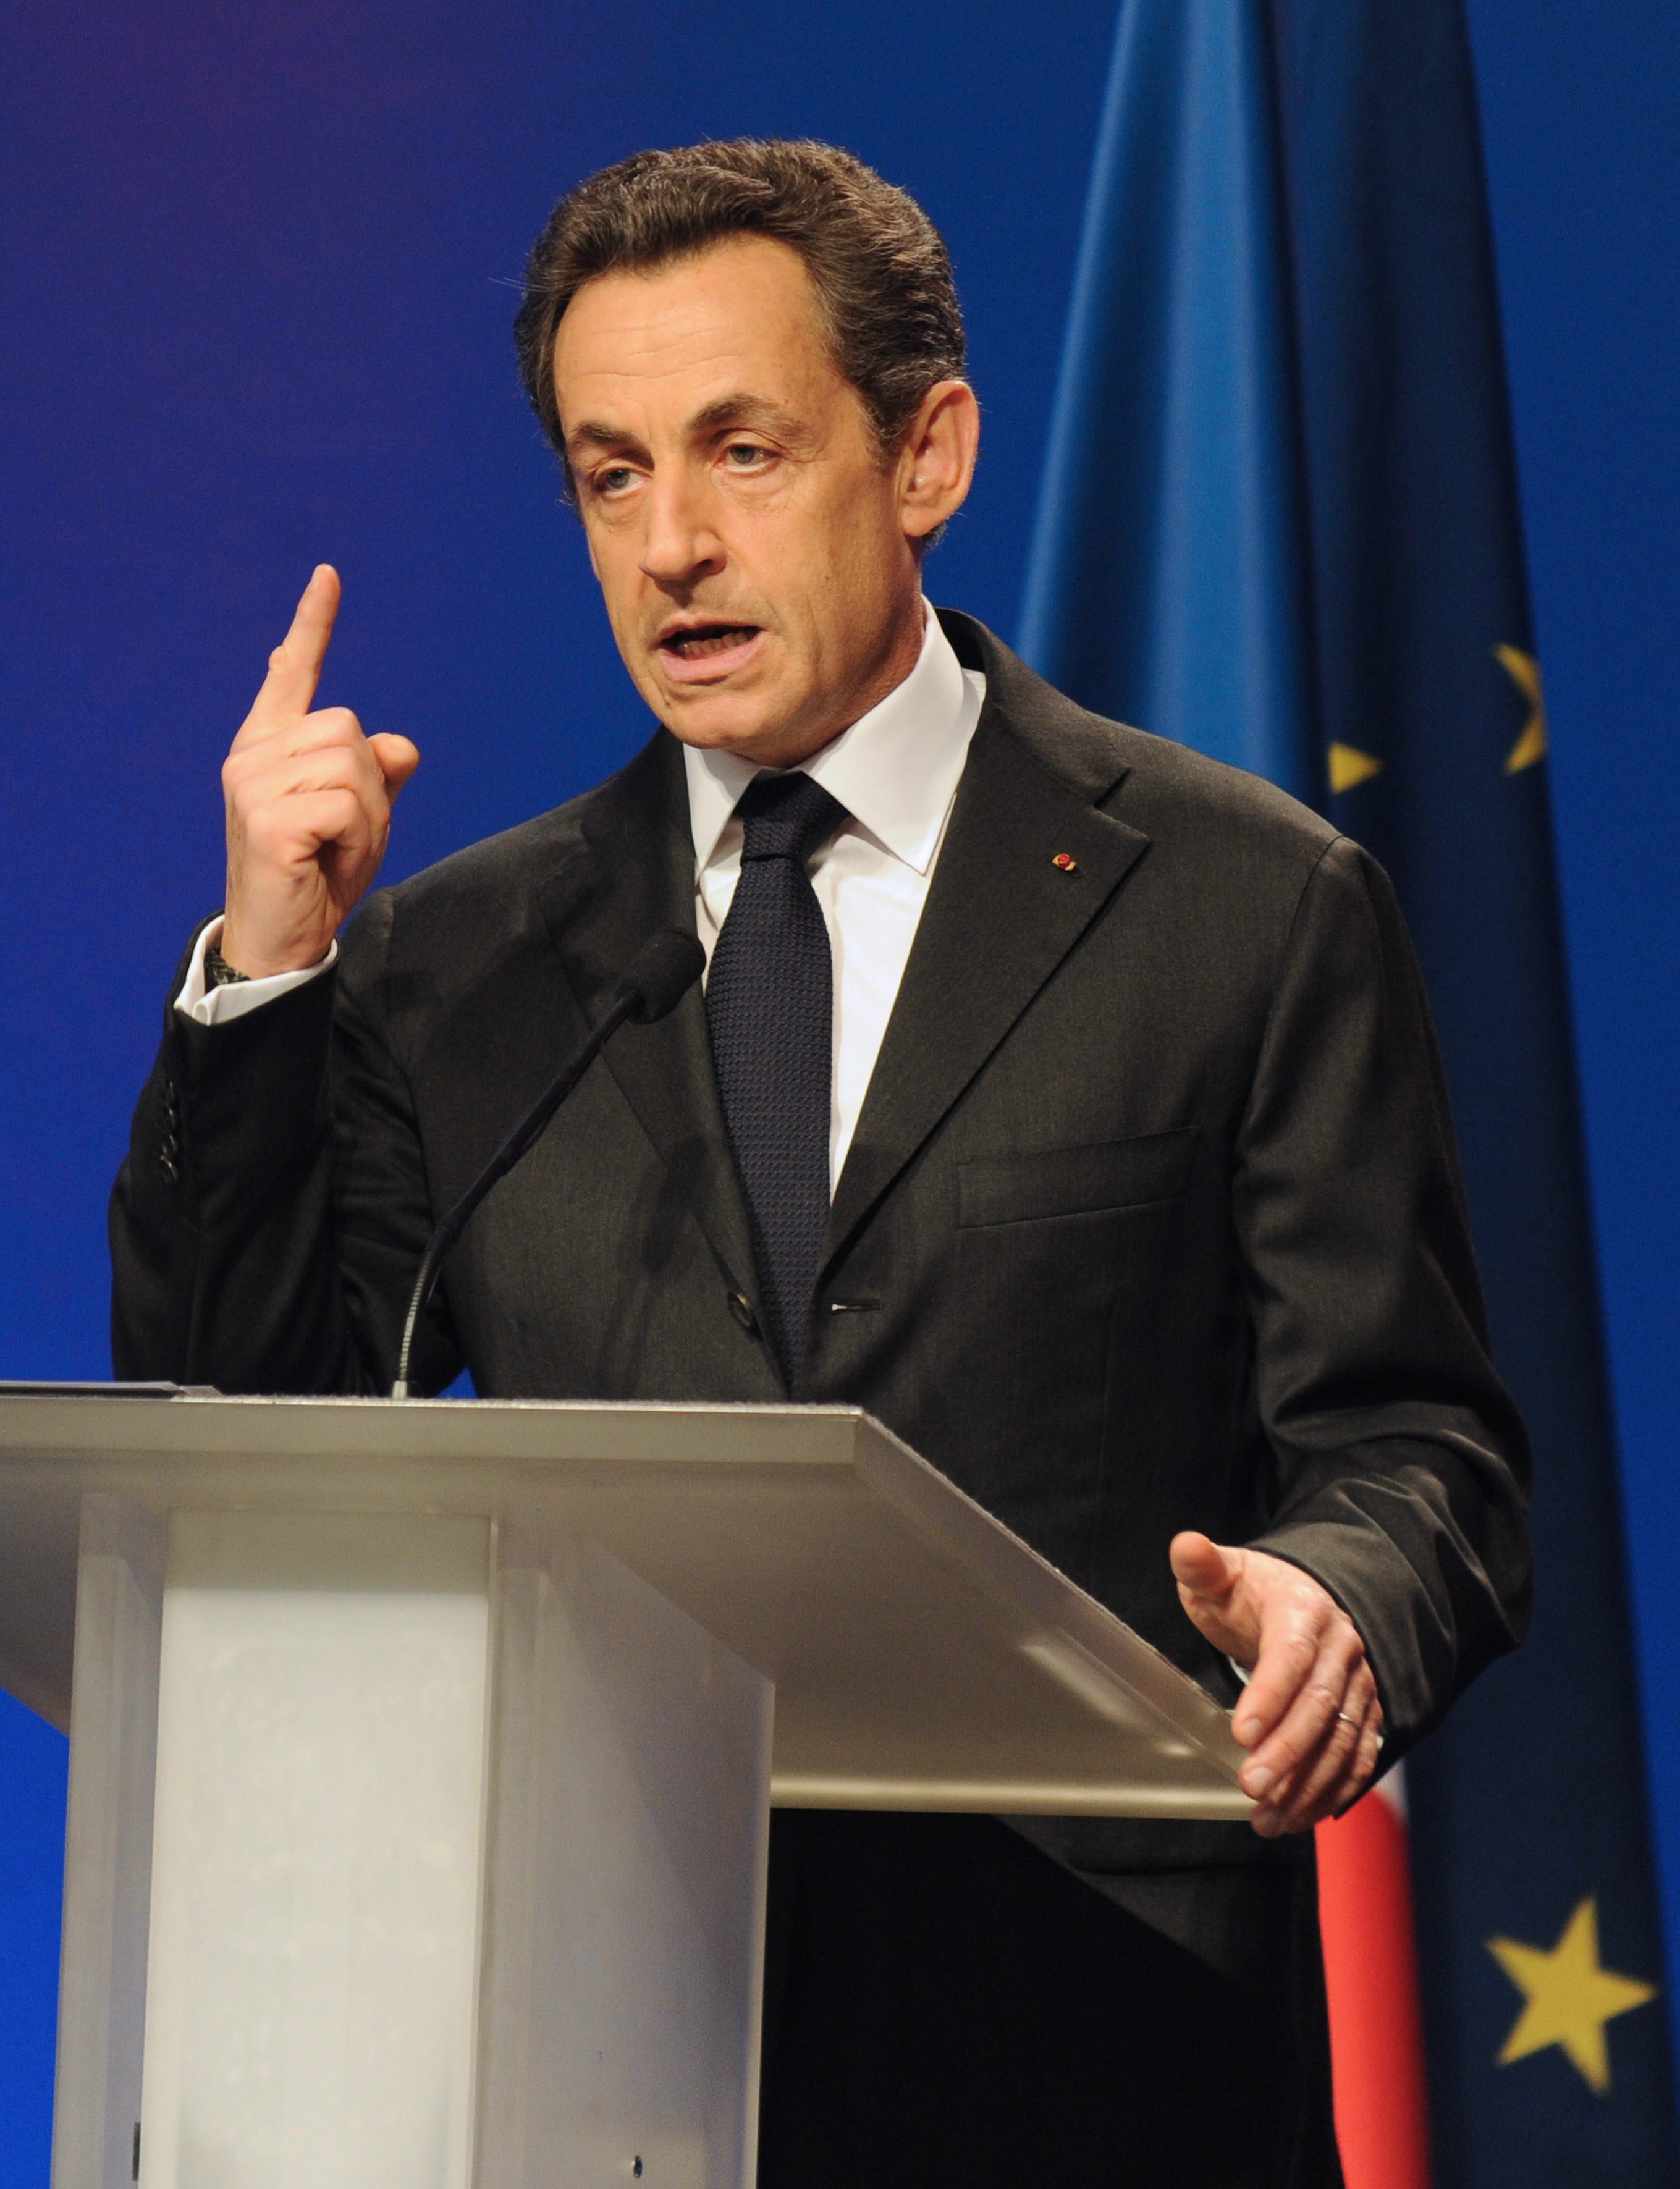 Саркози се оттегля от политиката, ако загуби изборите